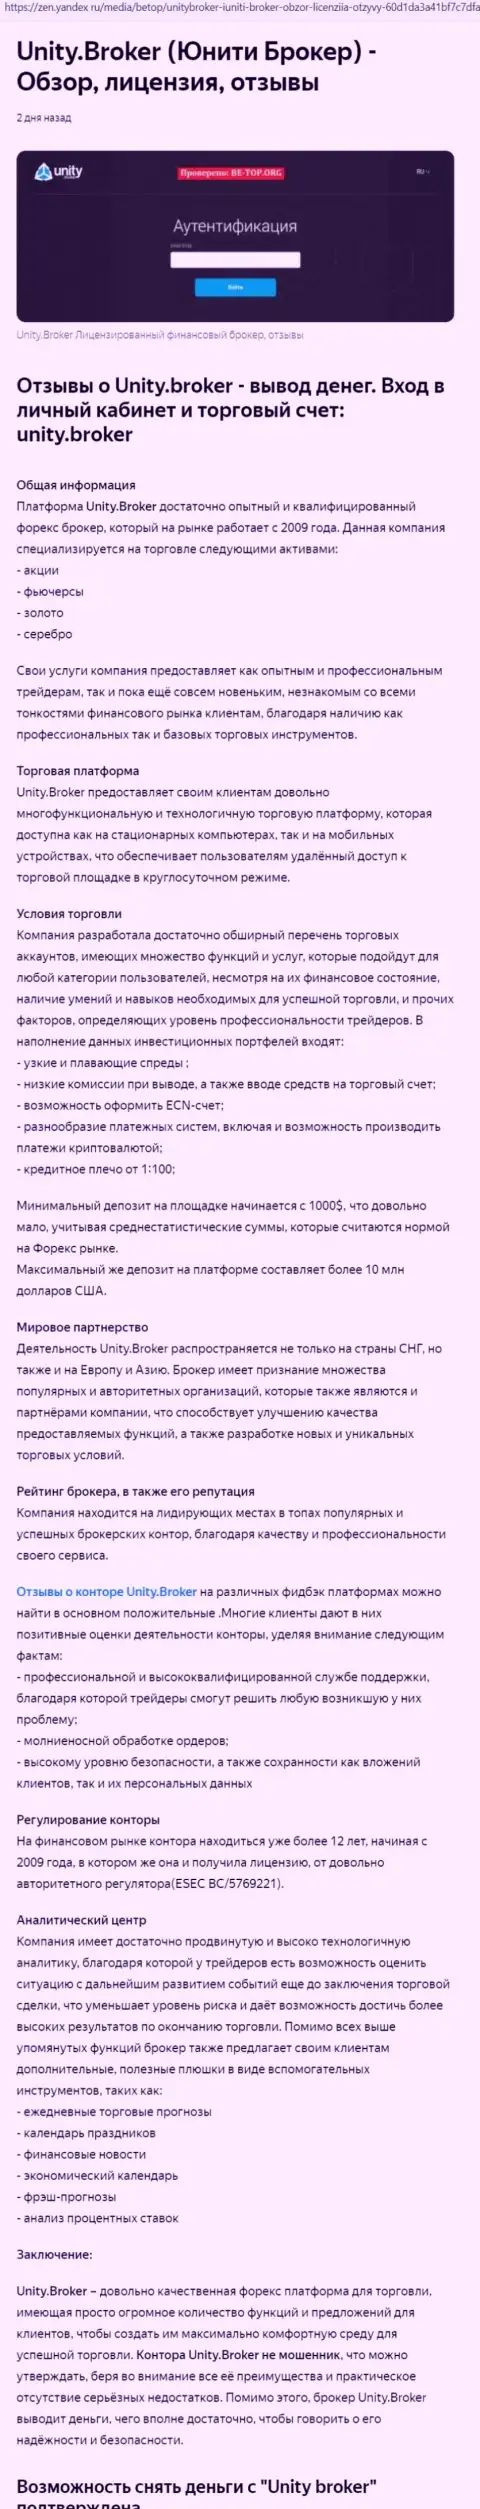 Обзор форекс дилинговой организации Unity Broker на web-сайте Yandex Zen